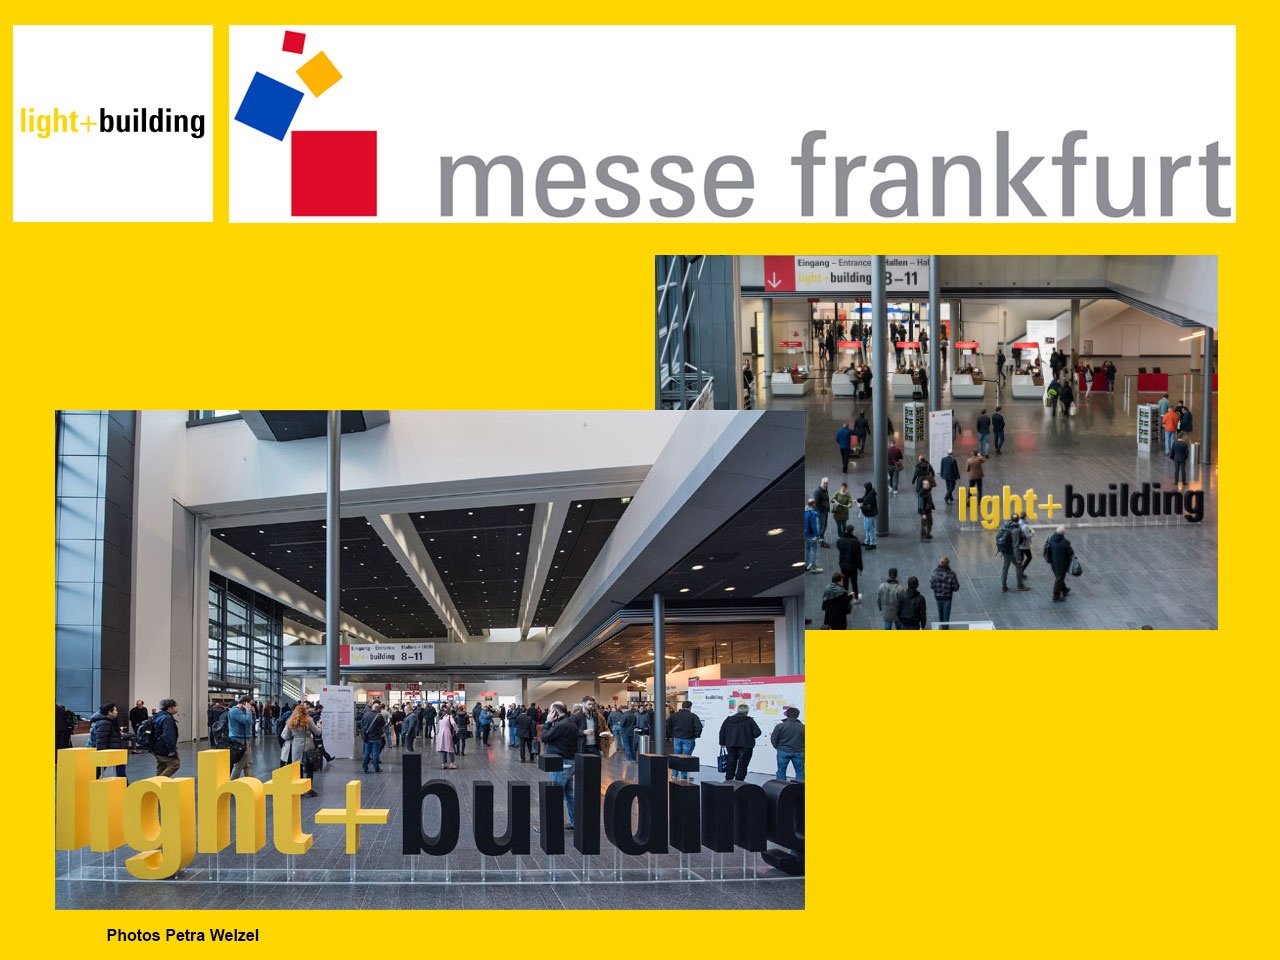 Light + Building, organisé par Messe Frankfurt, est reporté du 27 septembre au 2 octobre 2020